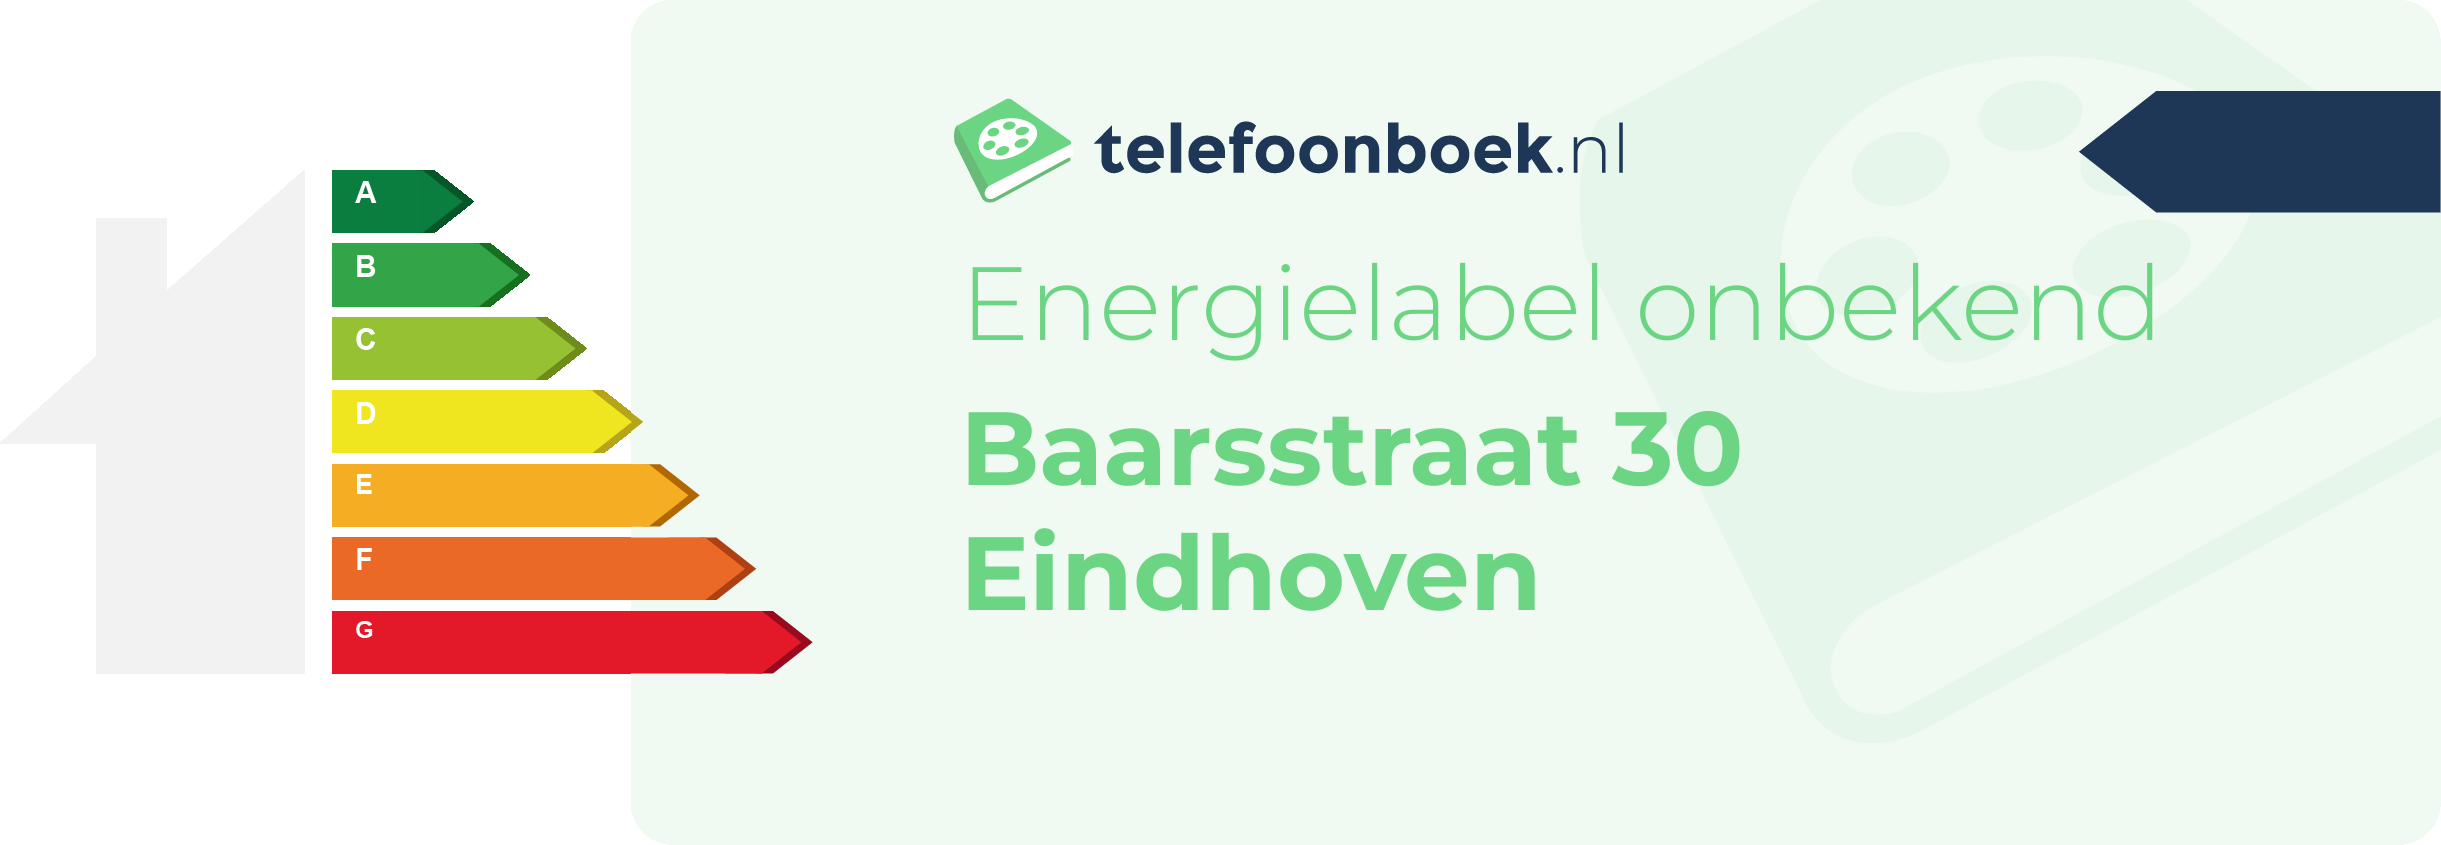 Energielabel Baarsstraat 30 Eindhoven